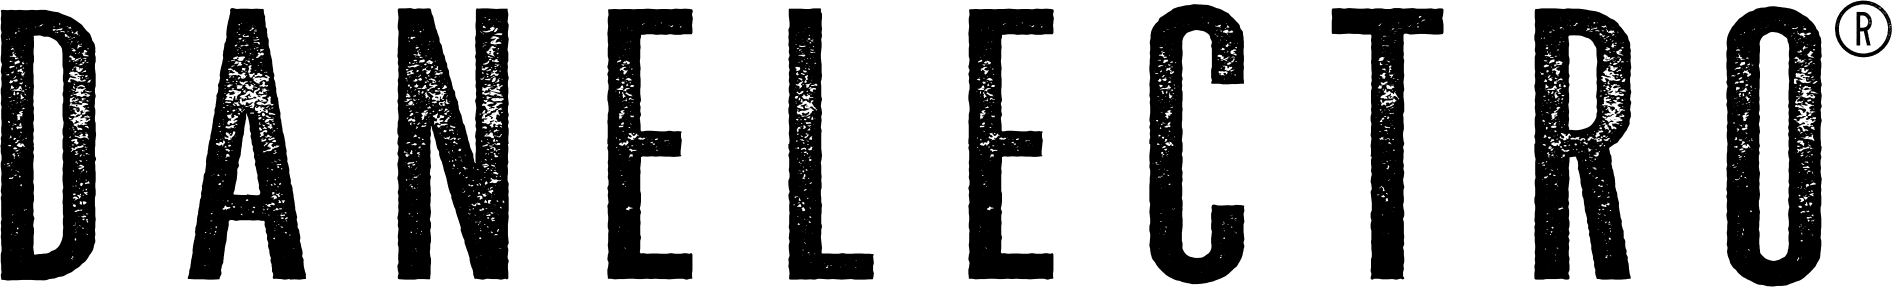 Danelectro logo